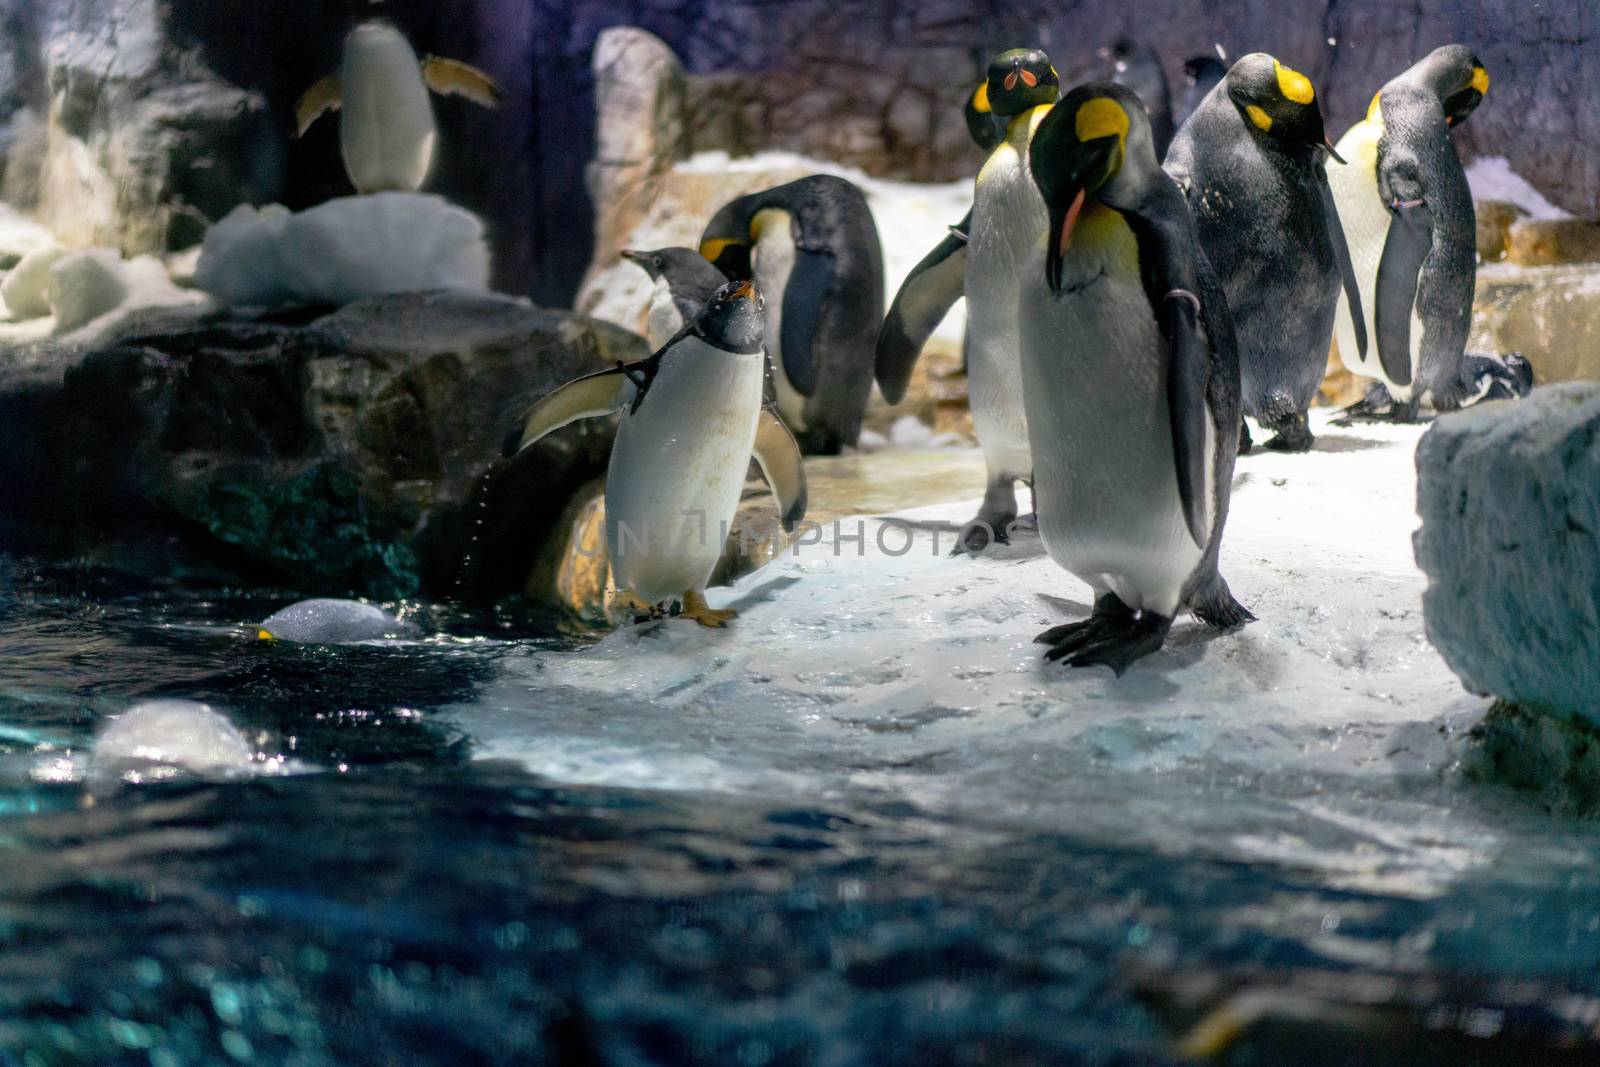 Folk of Gentoo penguins and King penguins at Osaka Aquarium Kaiy by Songpracone